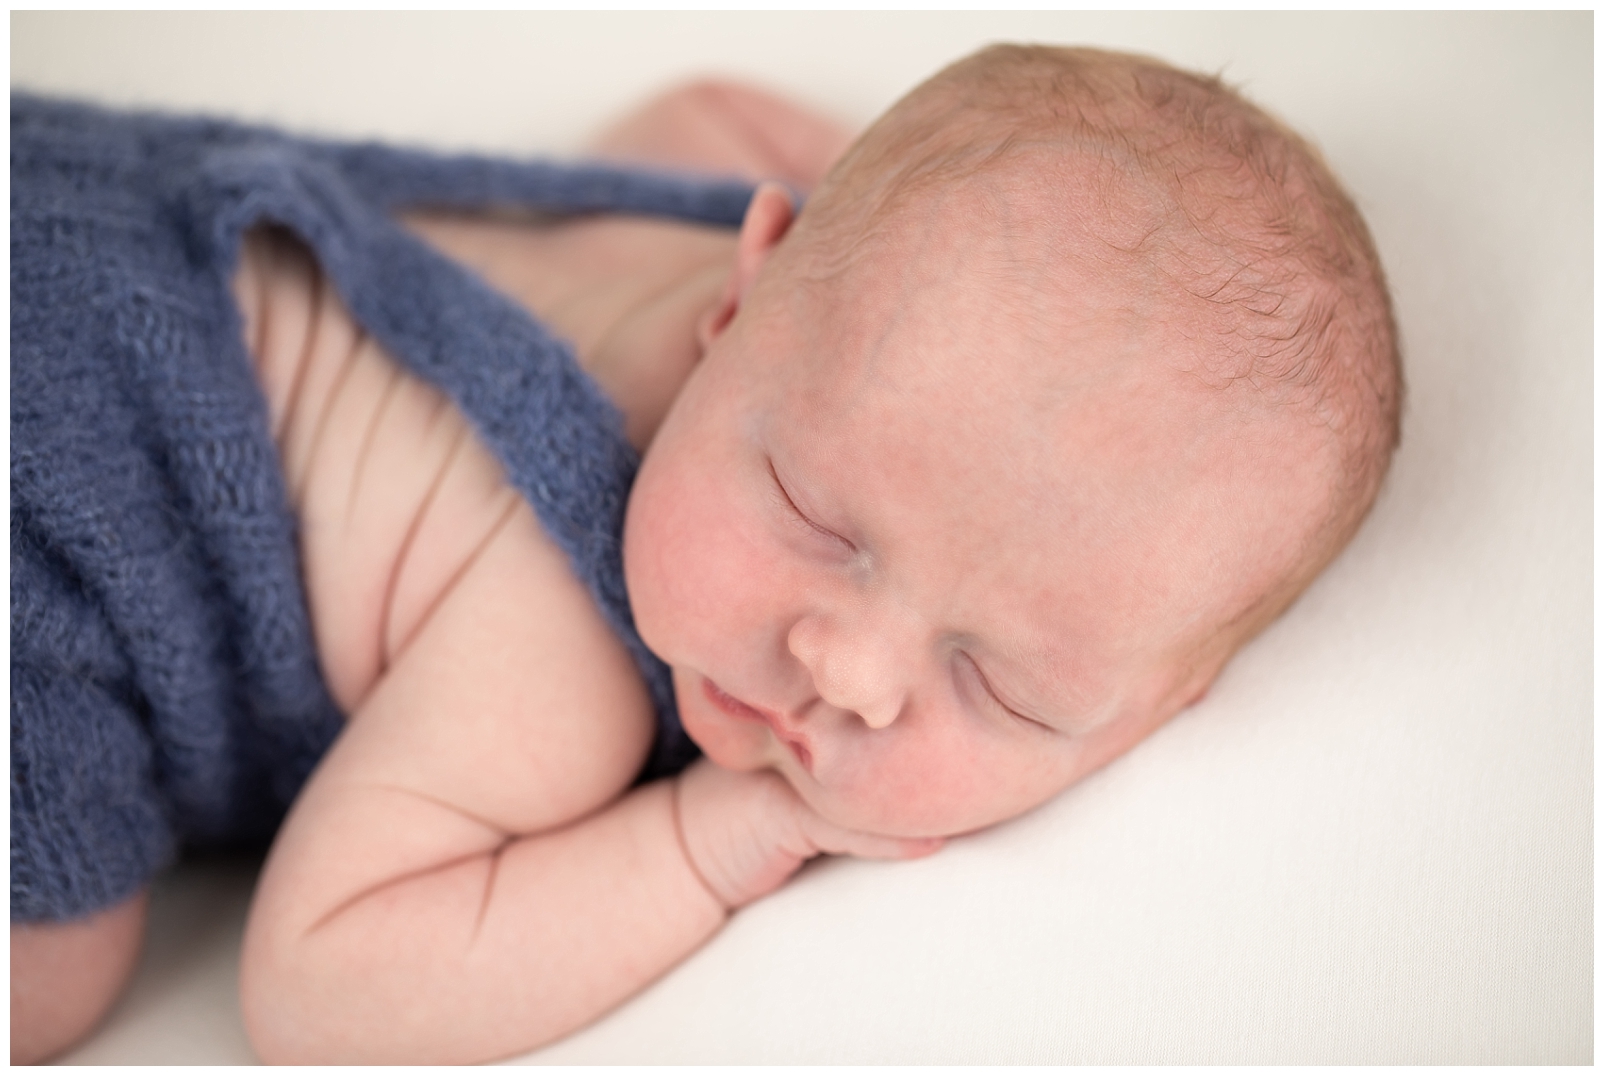 newborn boy in blue overalls